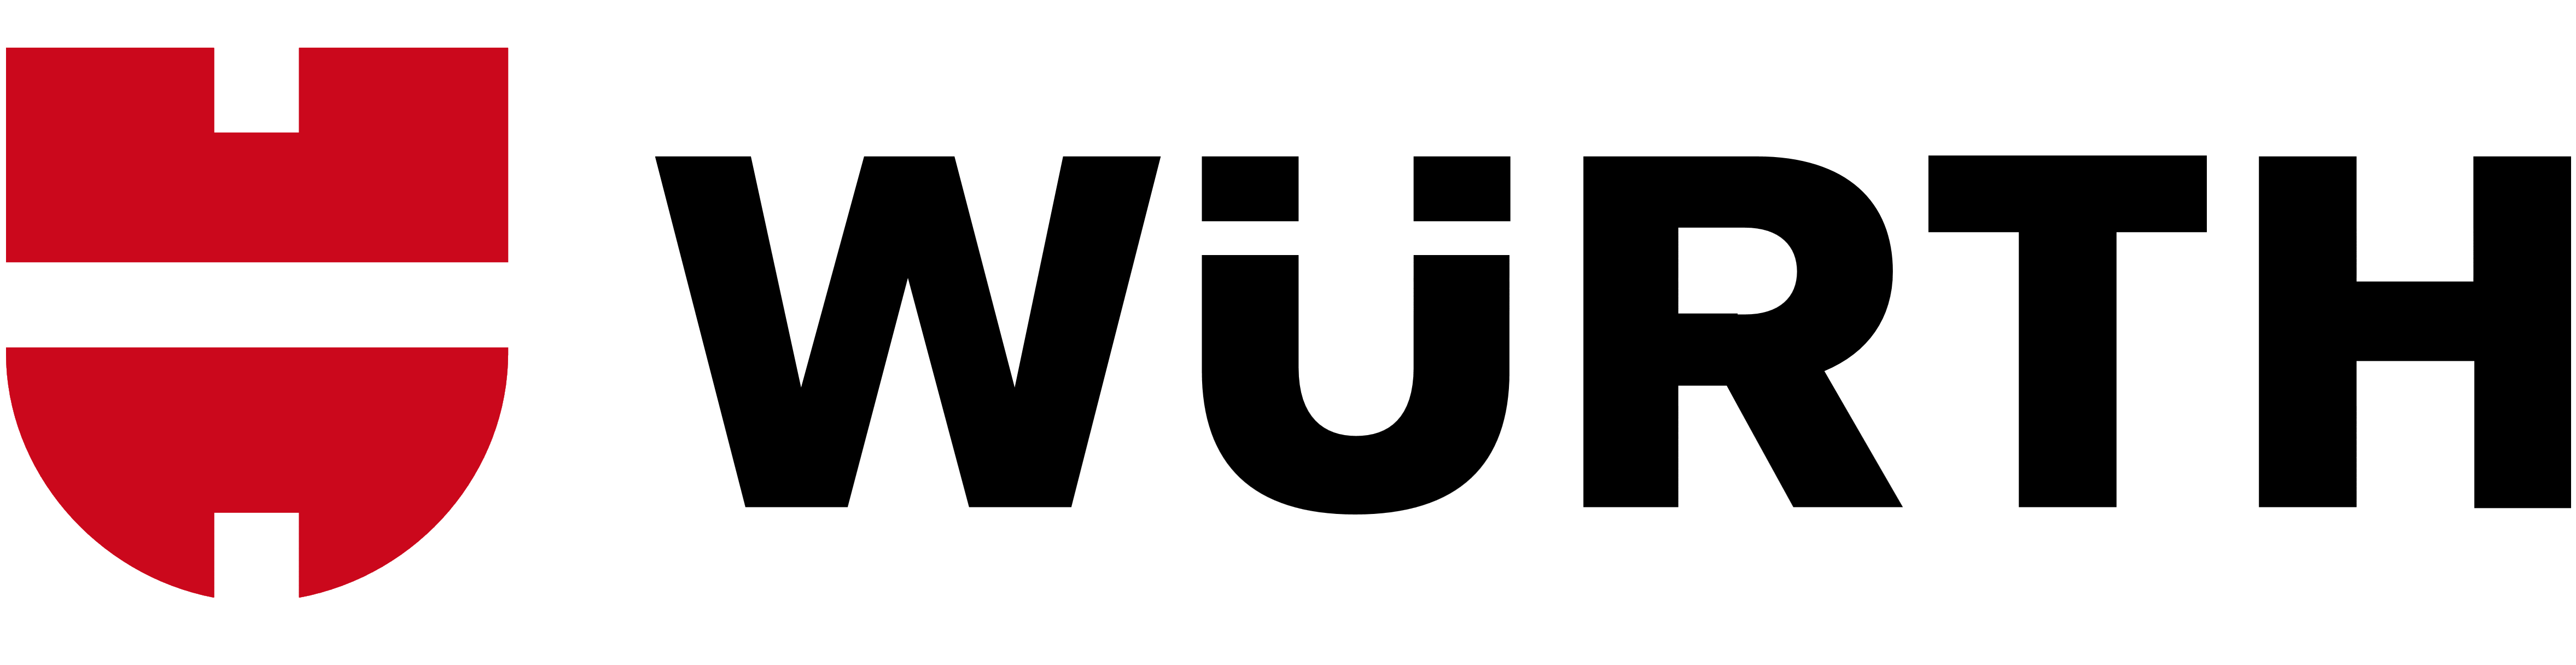 Wurth (Würth) logo, logotype